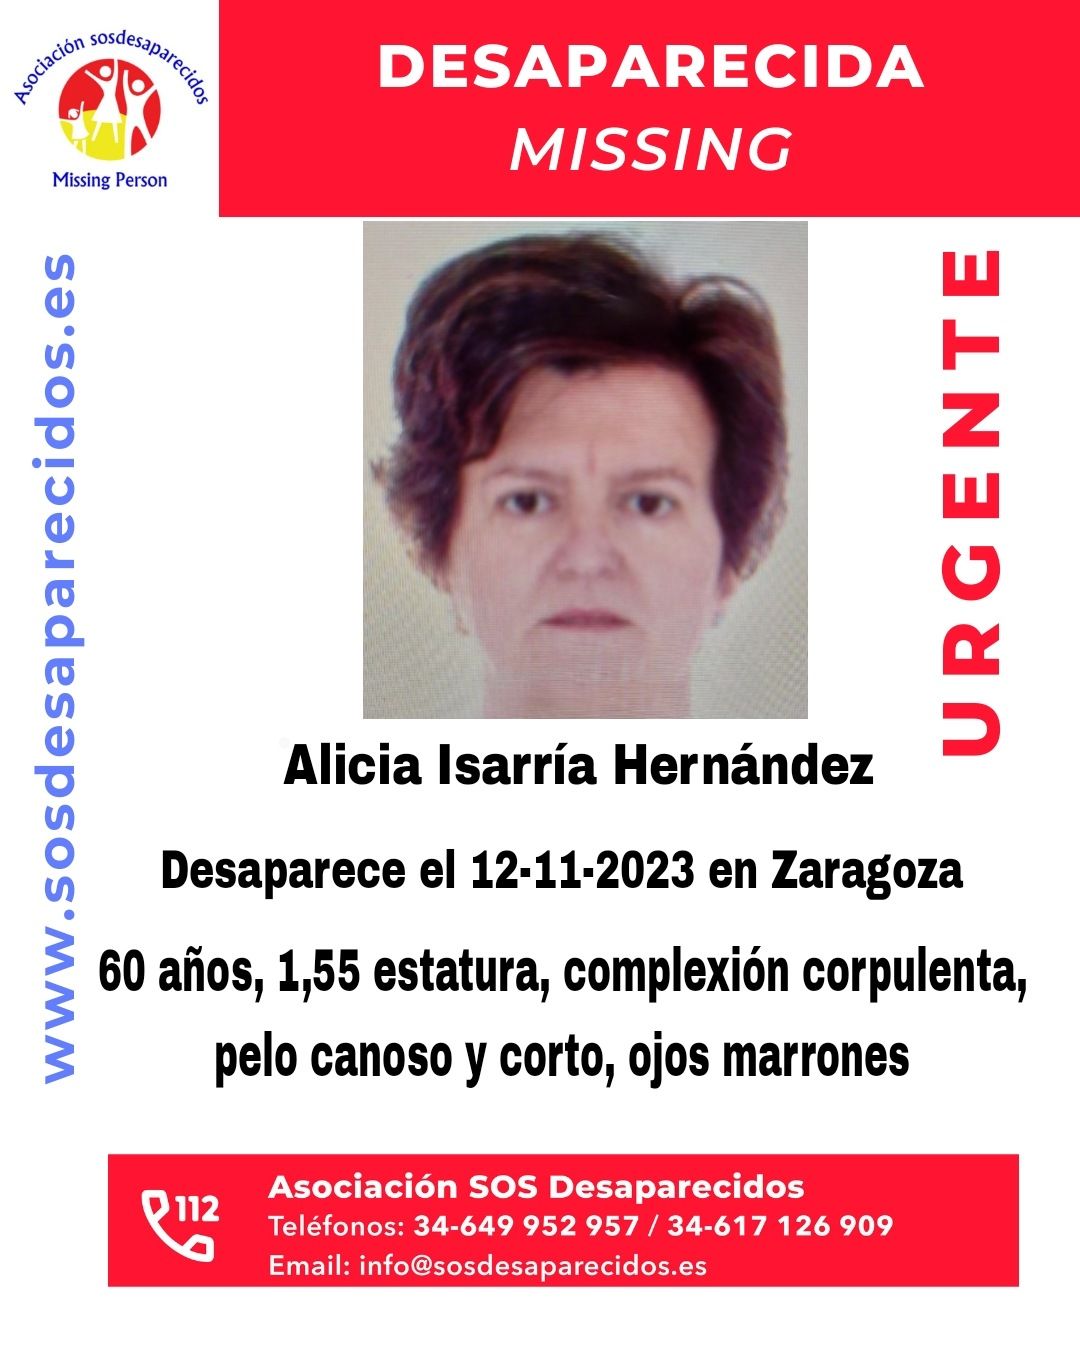 Alicia Isarría Hernández ha desaparecido en Zaragoza